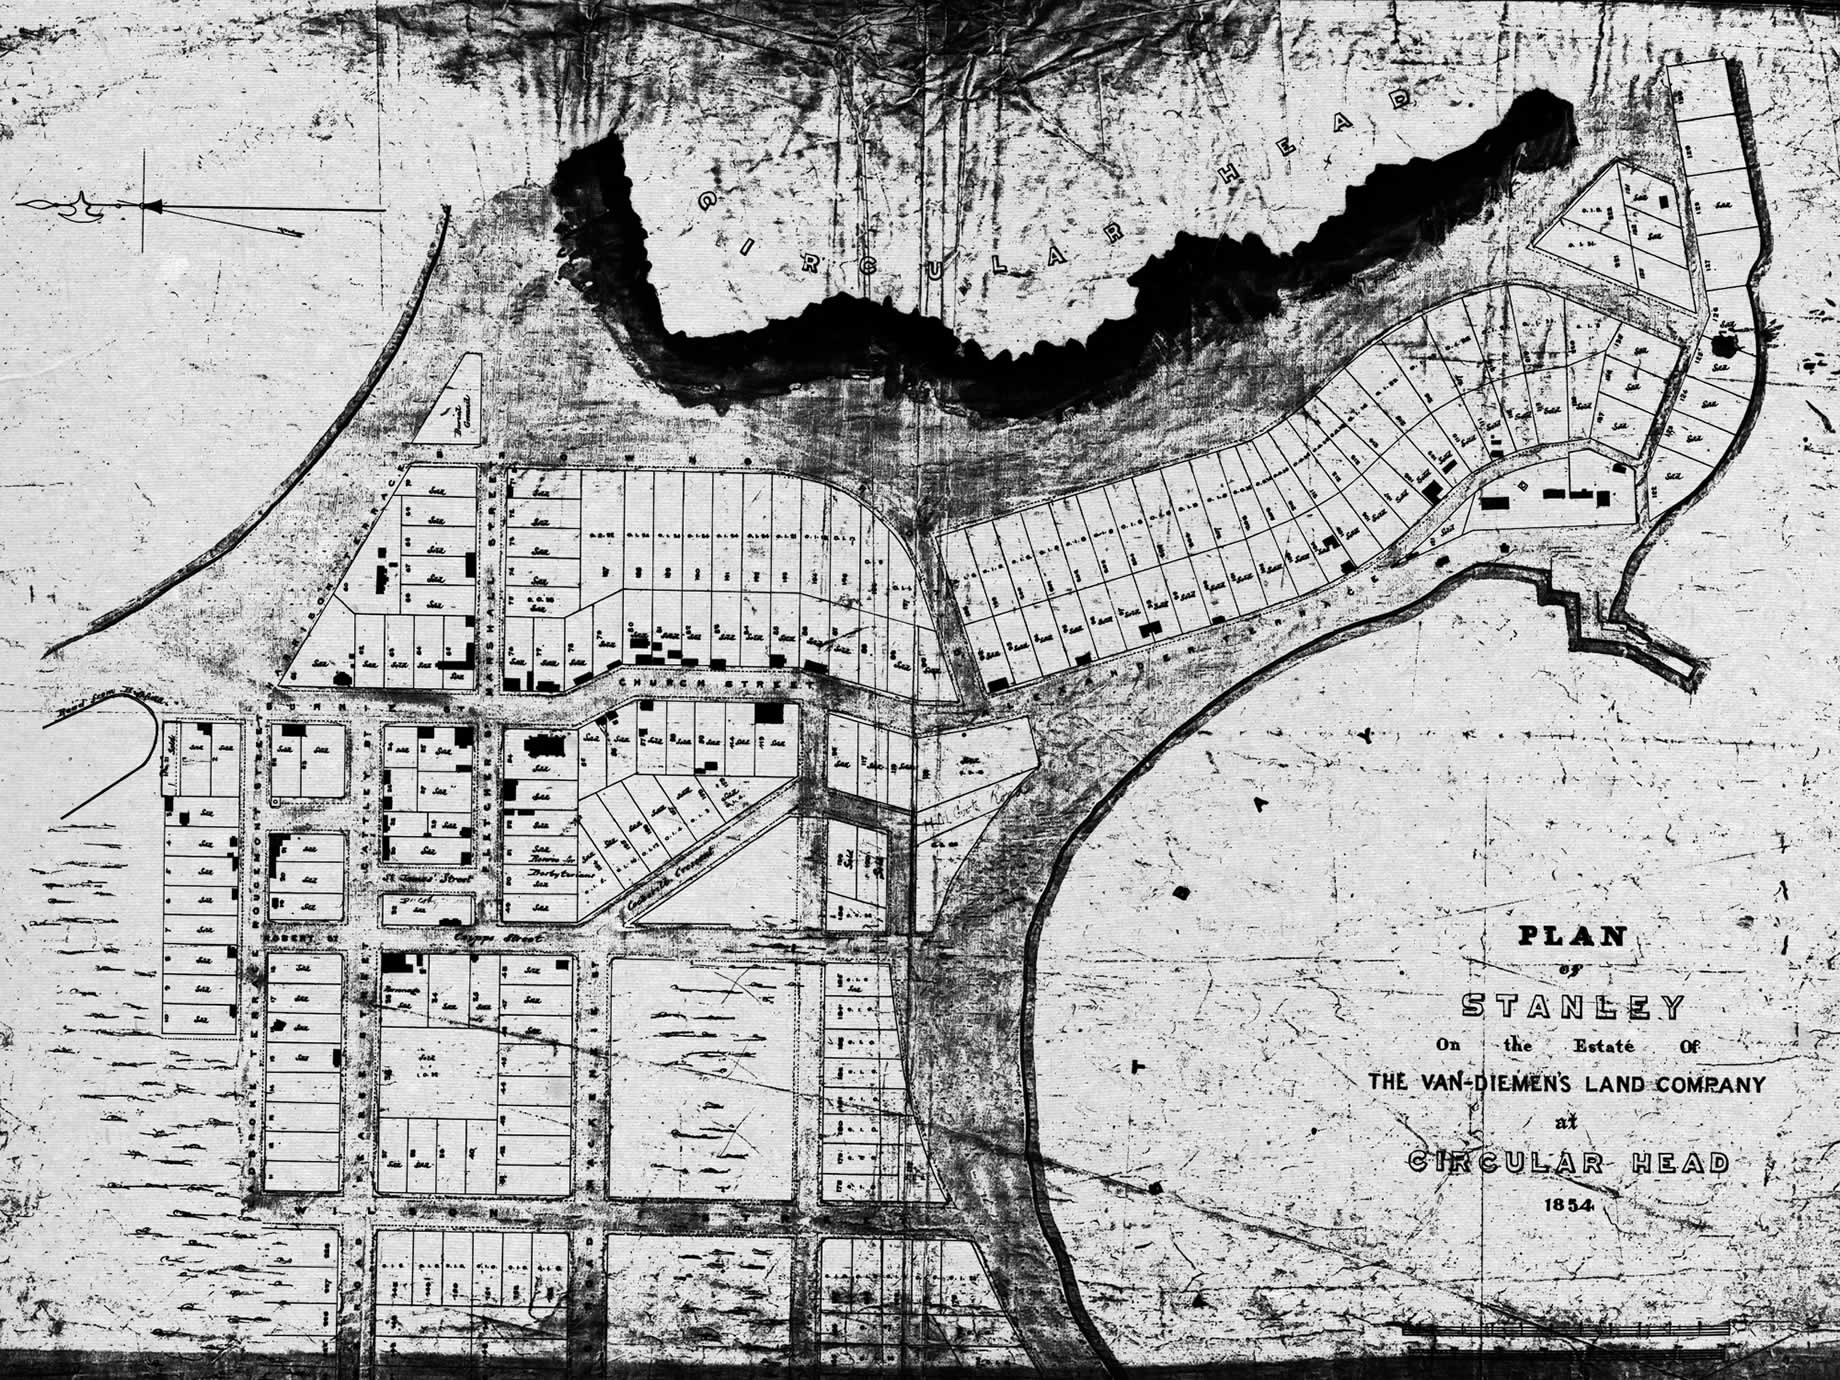 John Lee Archers Karte von Stanley auf dem Anwesen der Van Diemen’s Land Company auf Circular Head, August 1854